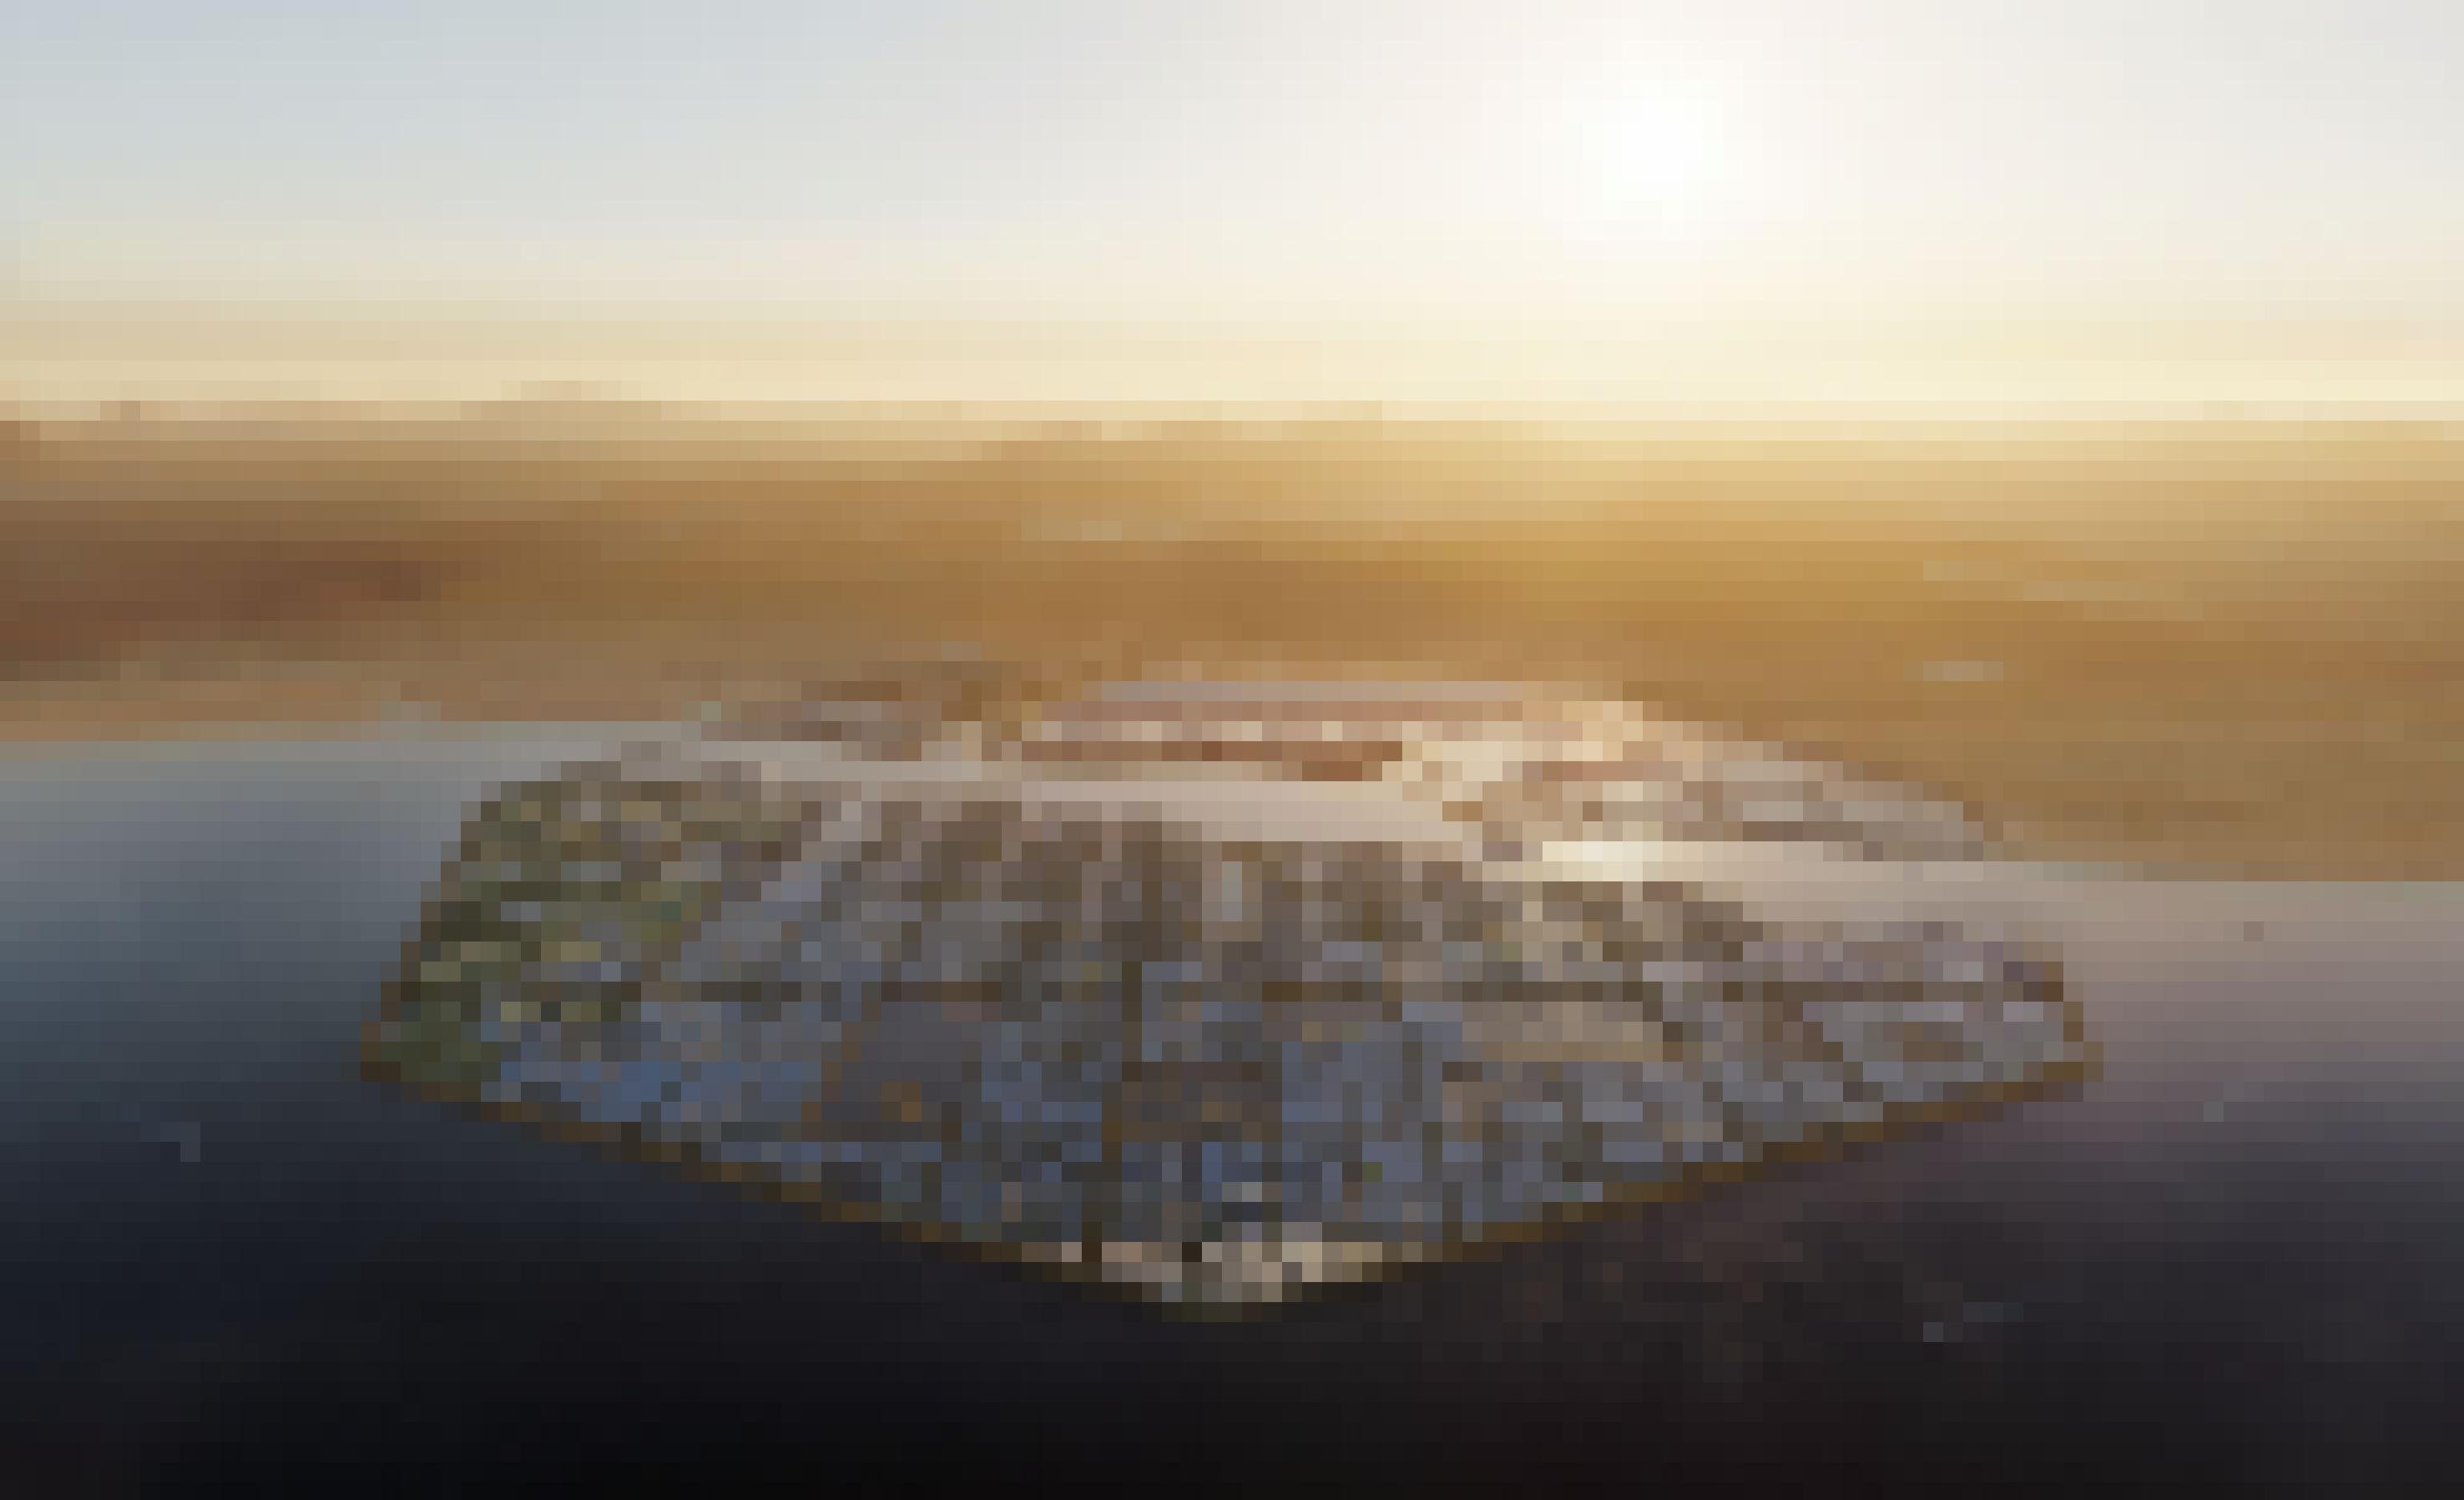 Man sieht die geplante Stadt Oxagon am Roten Meer aus der Vogelperspektive. Im Hintergrund sieht man die Wüste im Sonnenlicht.